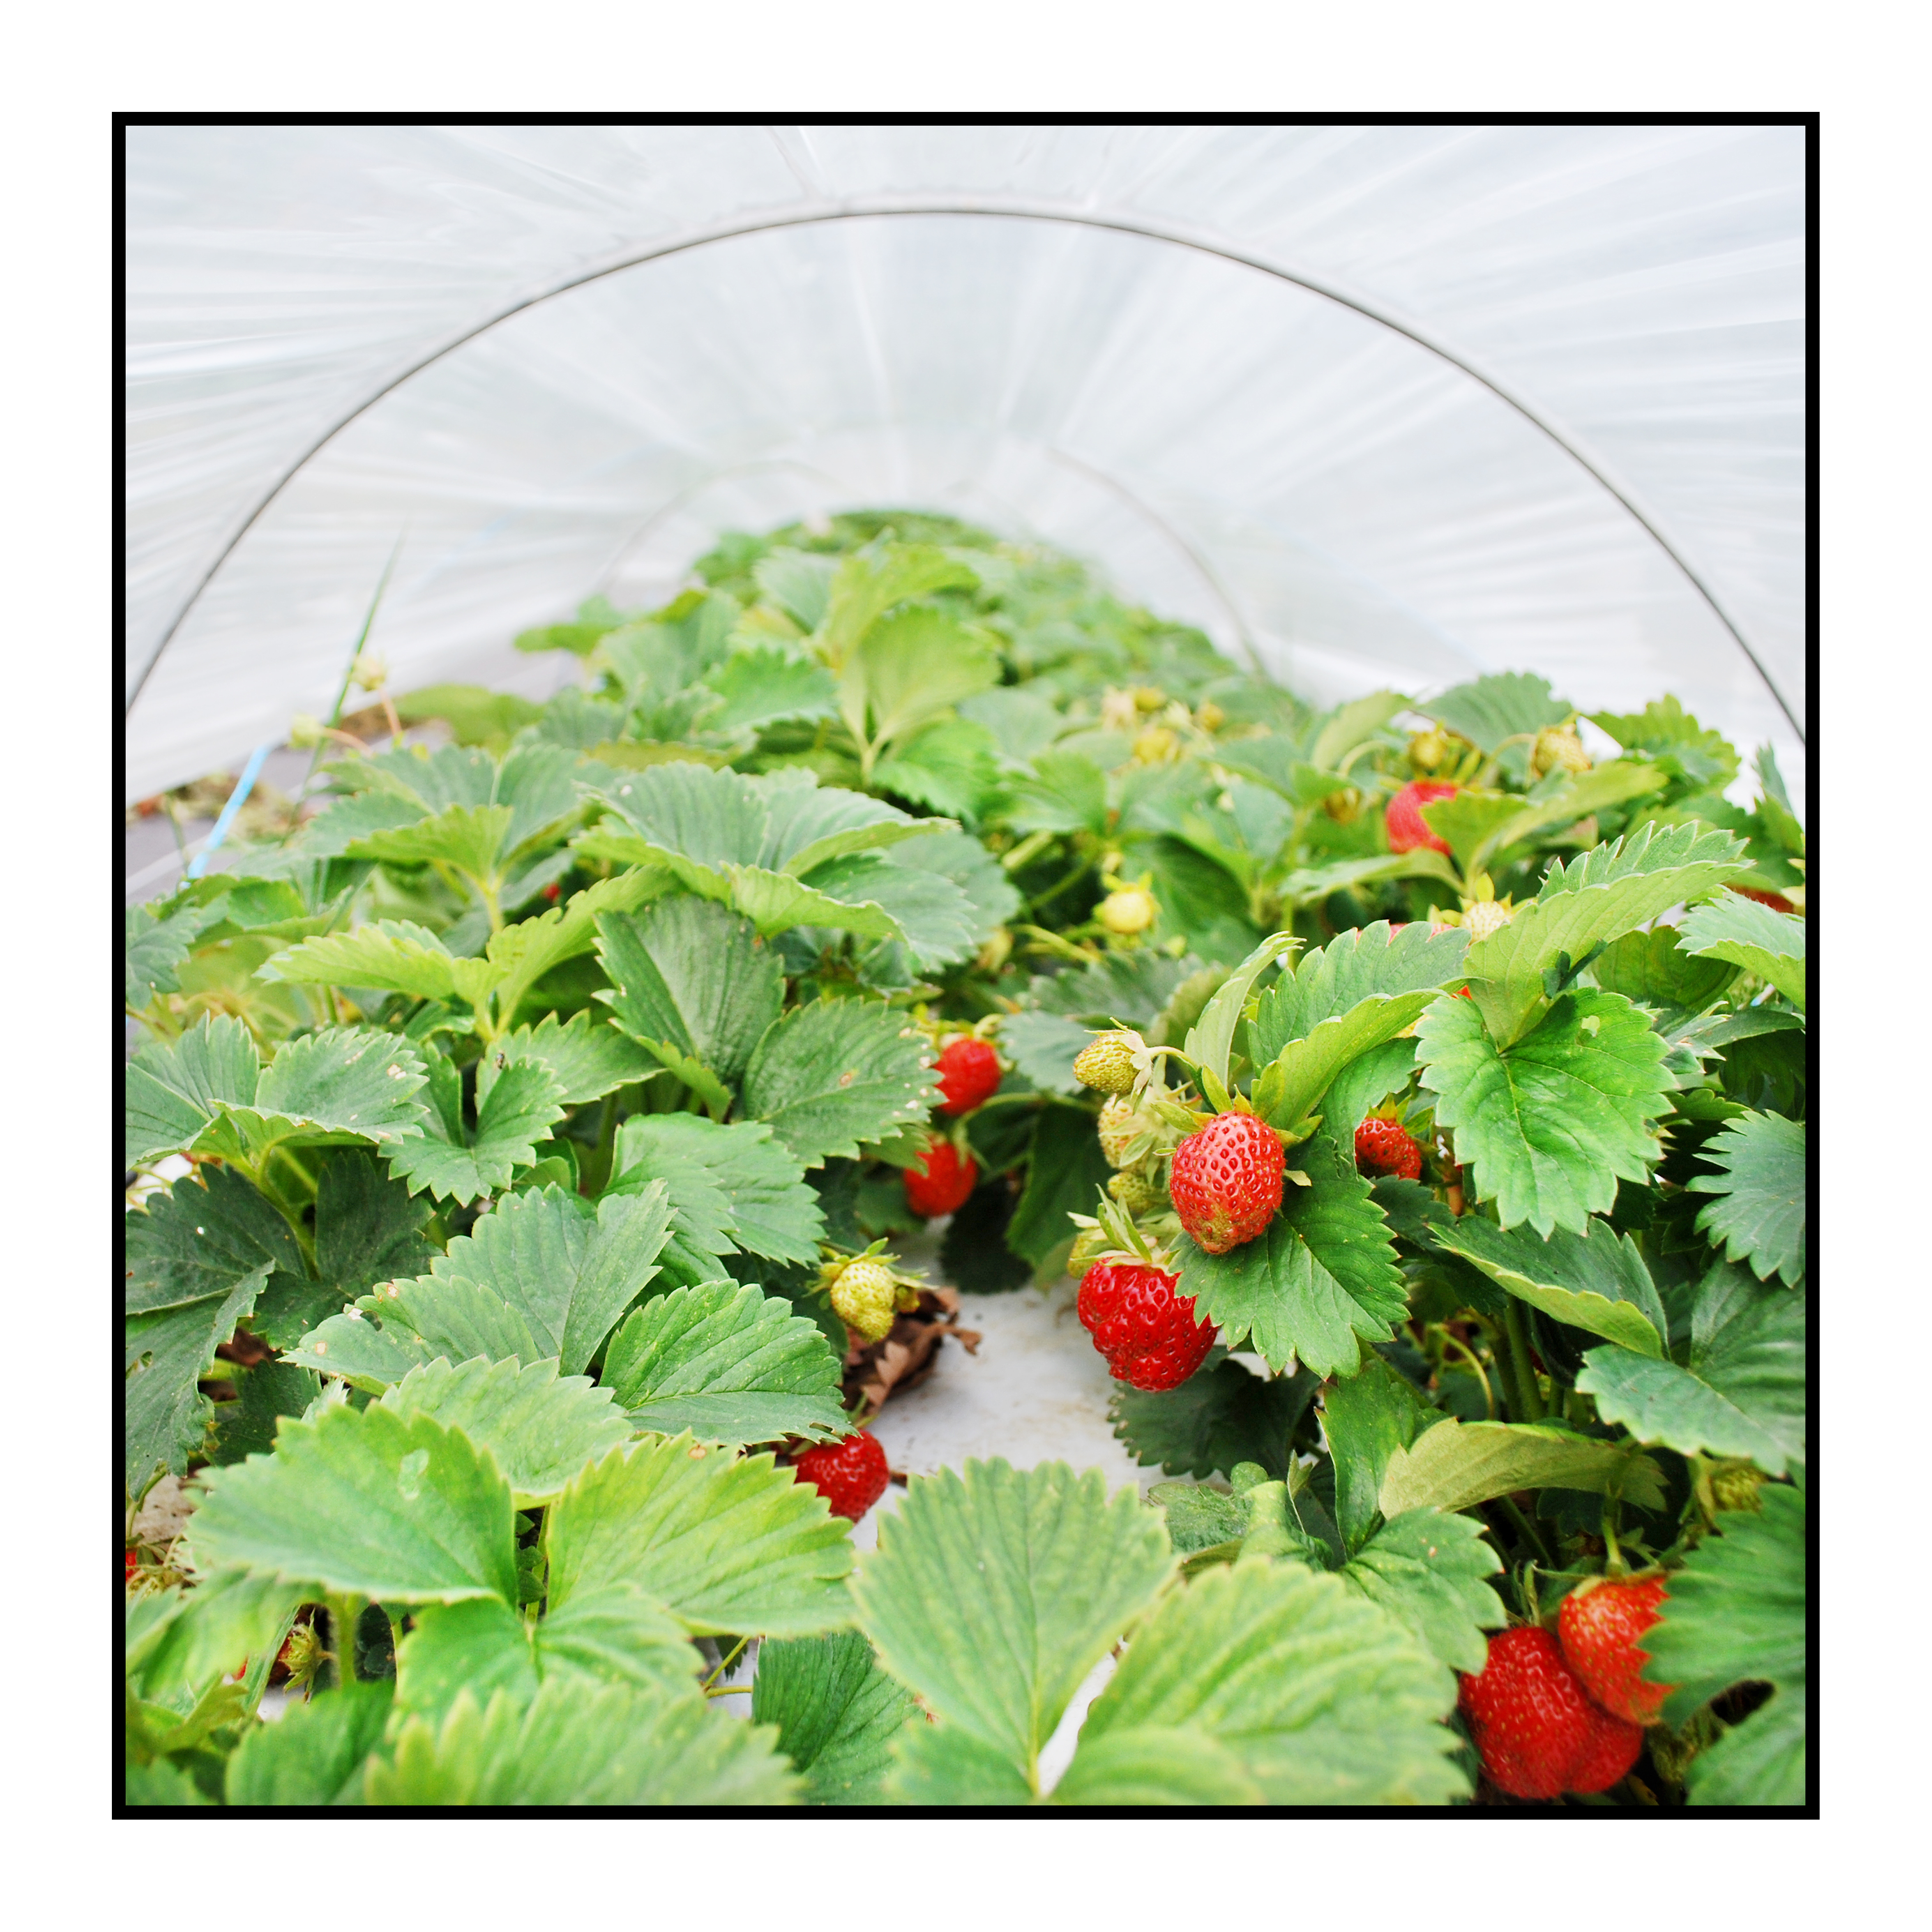 fraises- Pommes bio- locales- arboriculteur- ferme-magasin de producteurs - Gilly sur Isère / Albertville- savoie - terroir